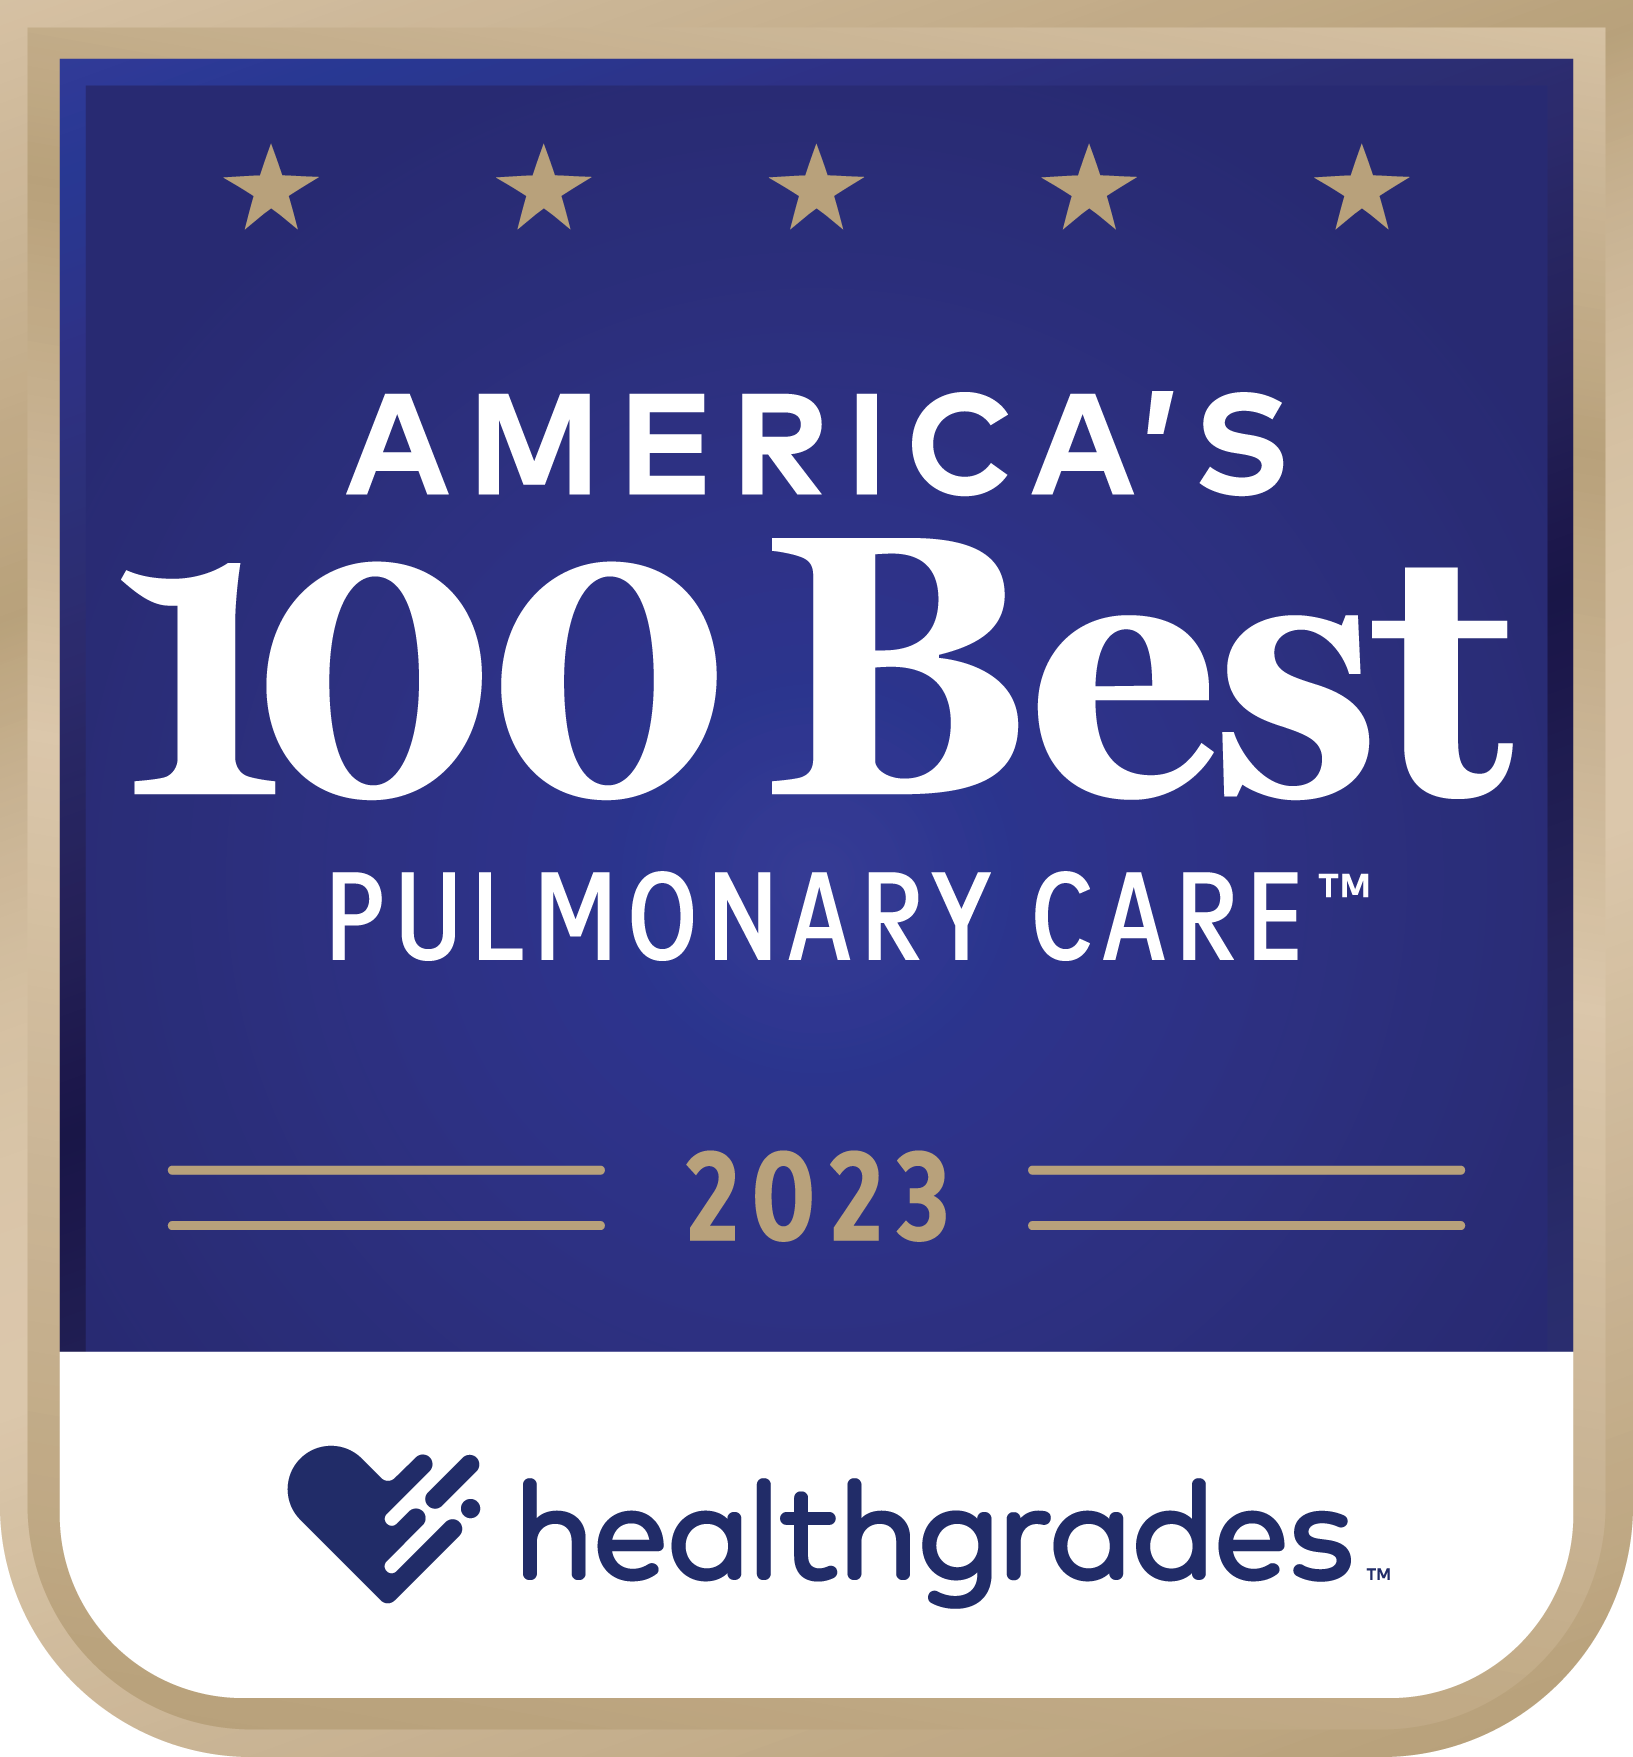 Pulmonary Care Award 2023